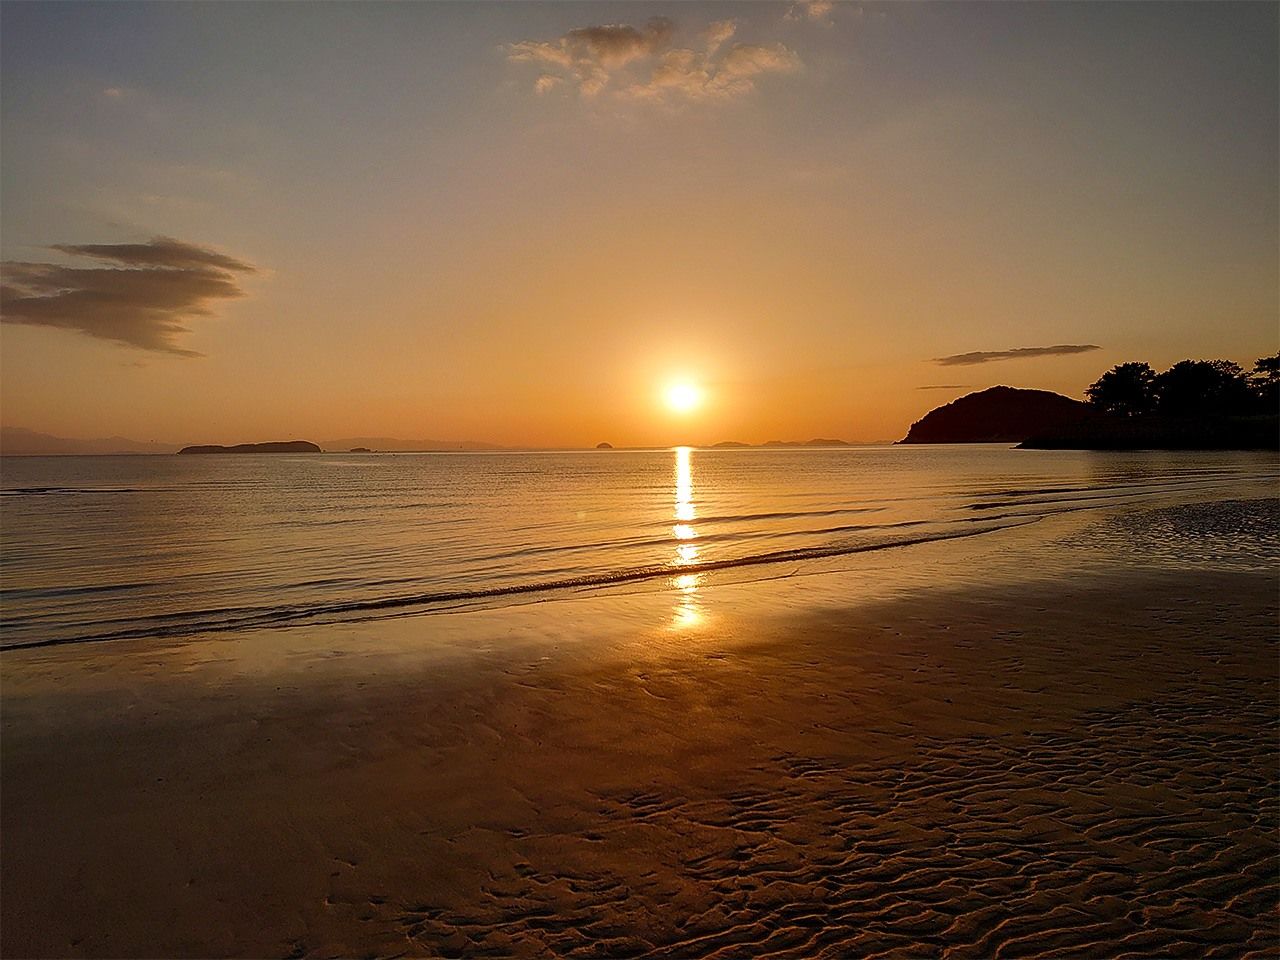 The sunset seen from Chichibugahama beach.